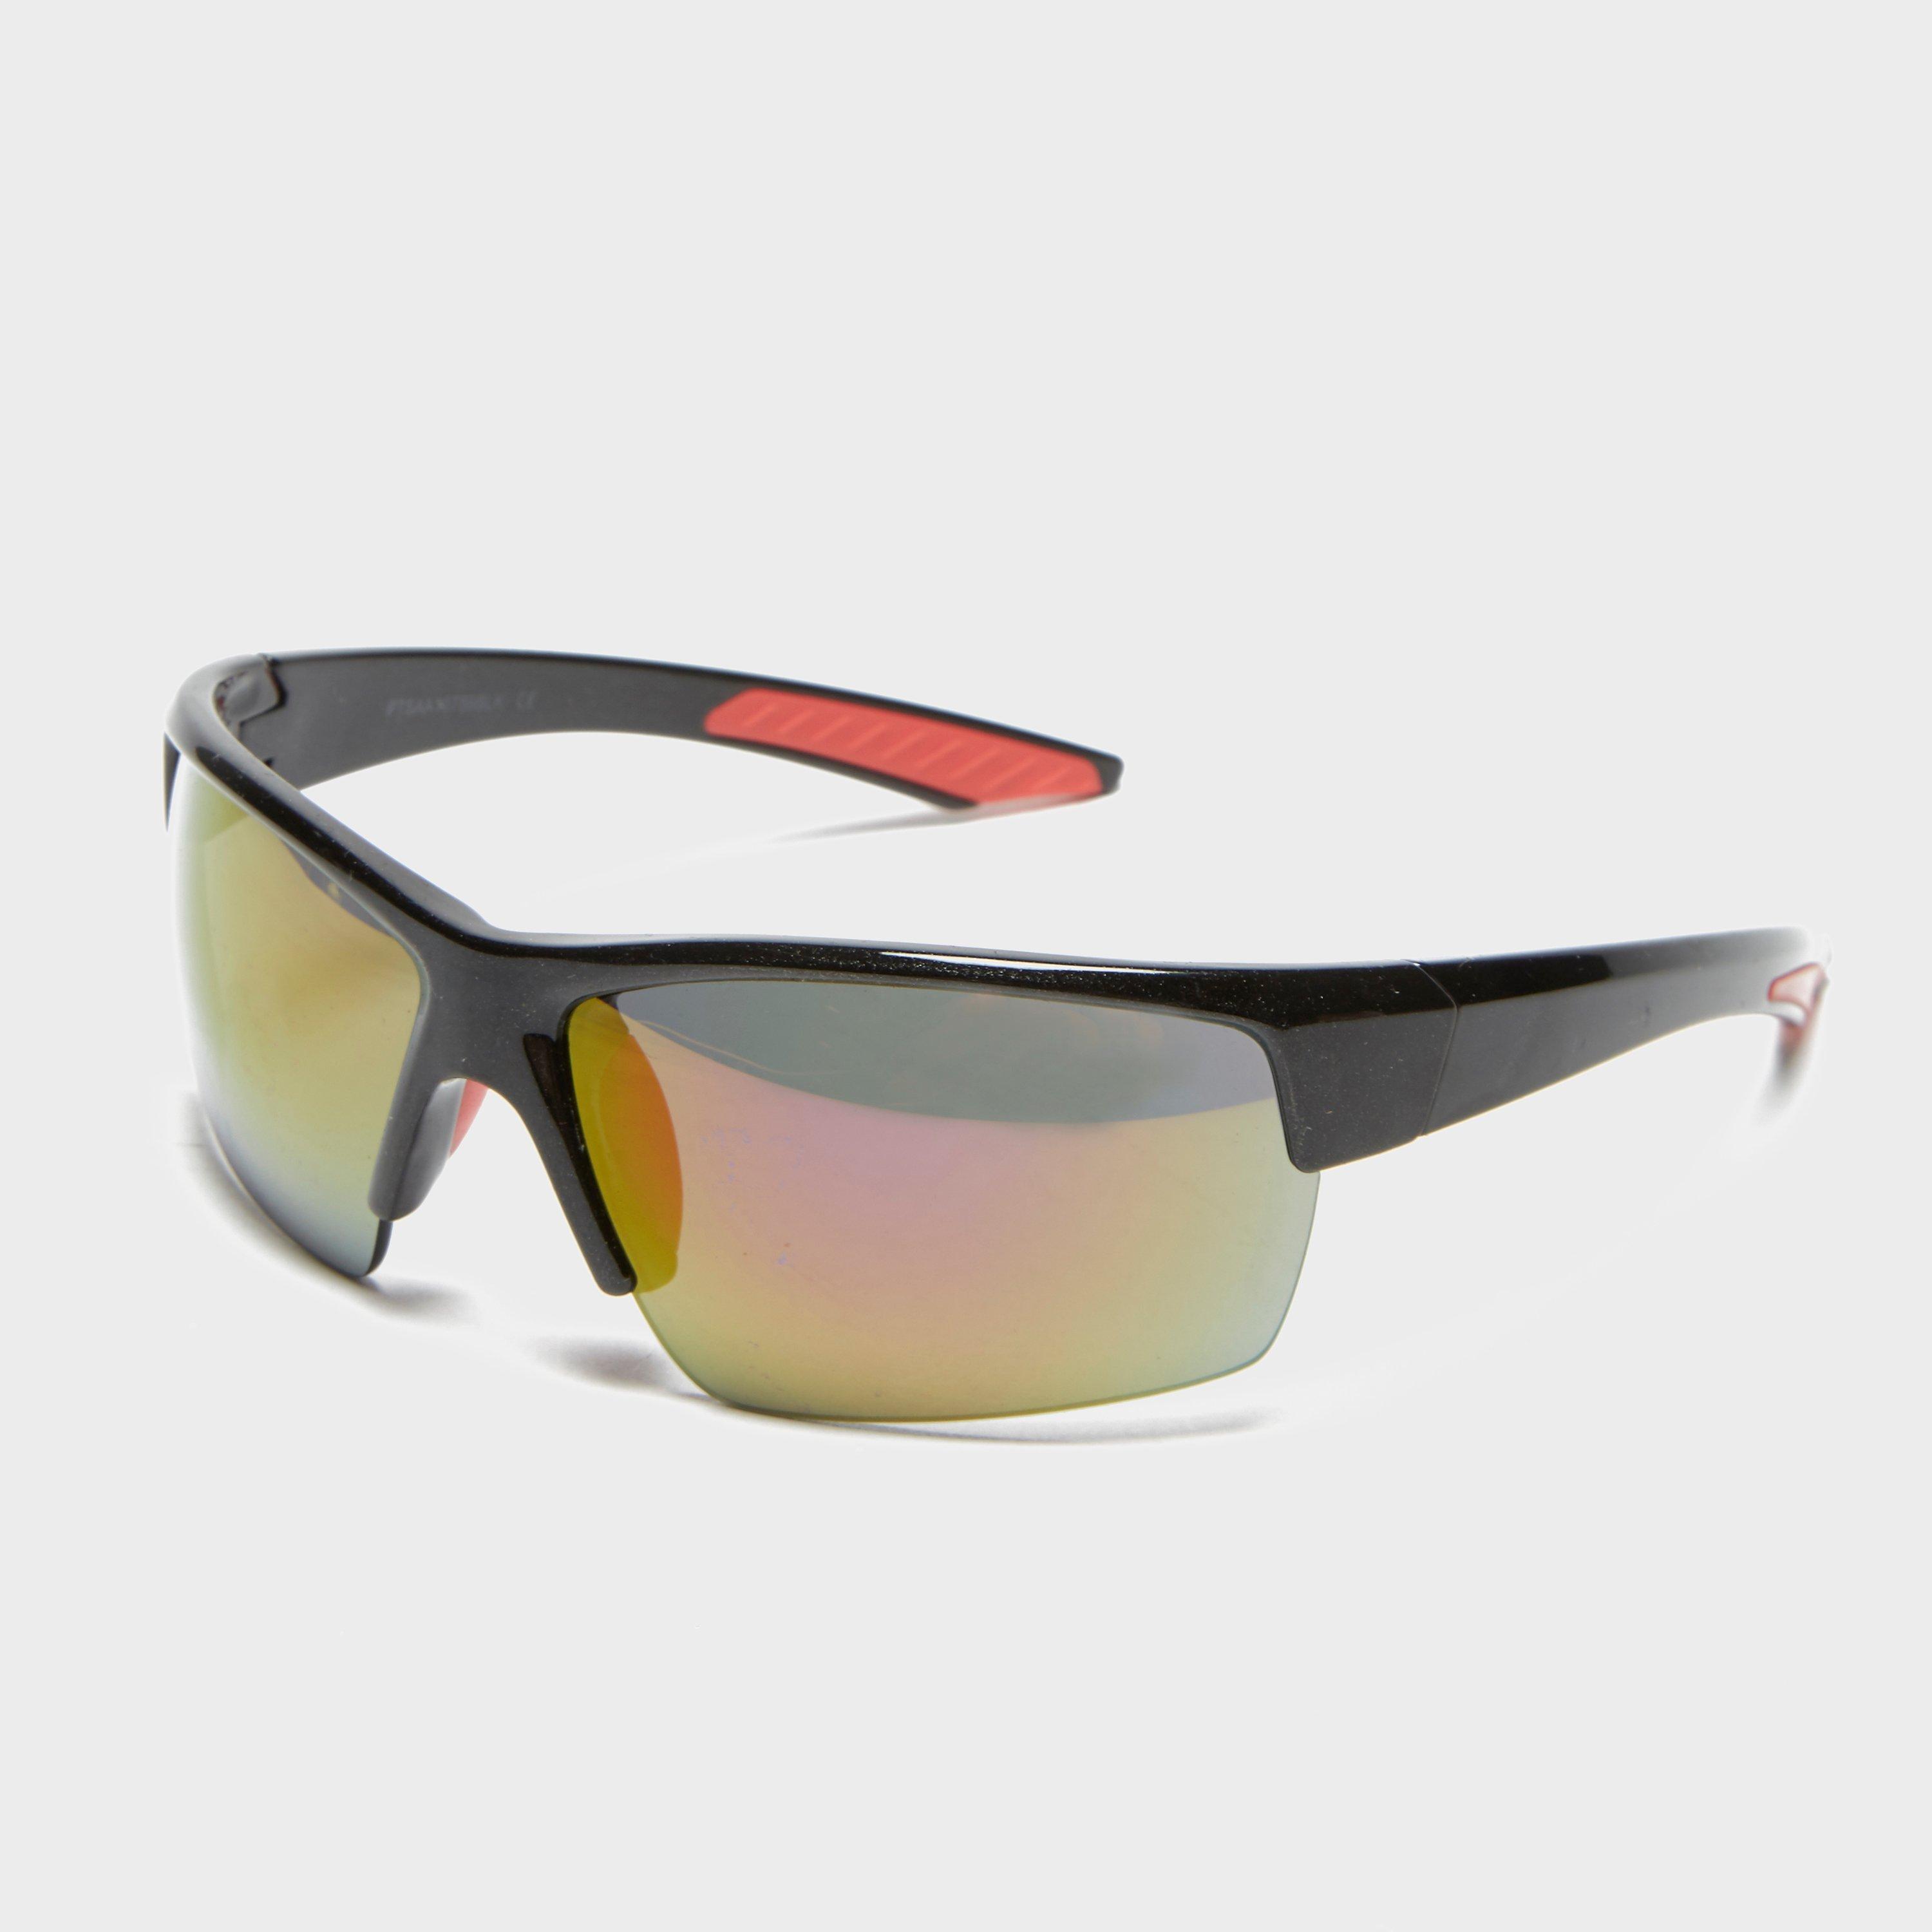 Bloc Deck X750 Sunglasses Review